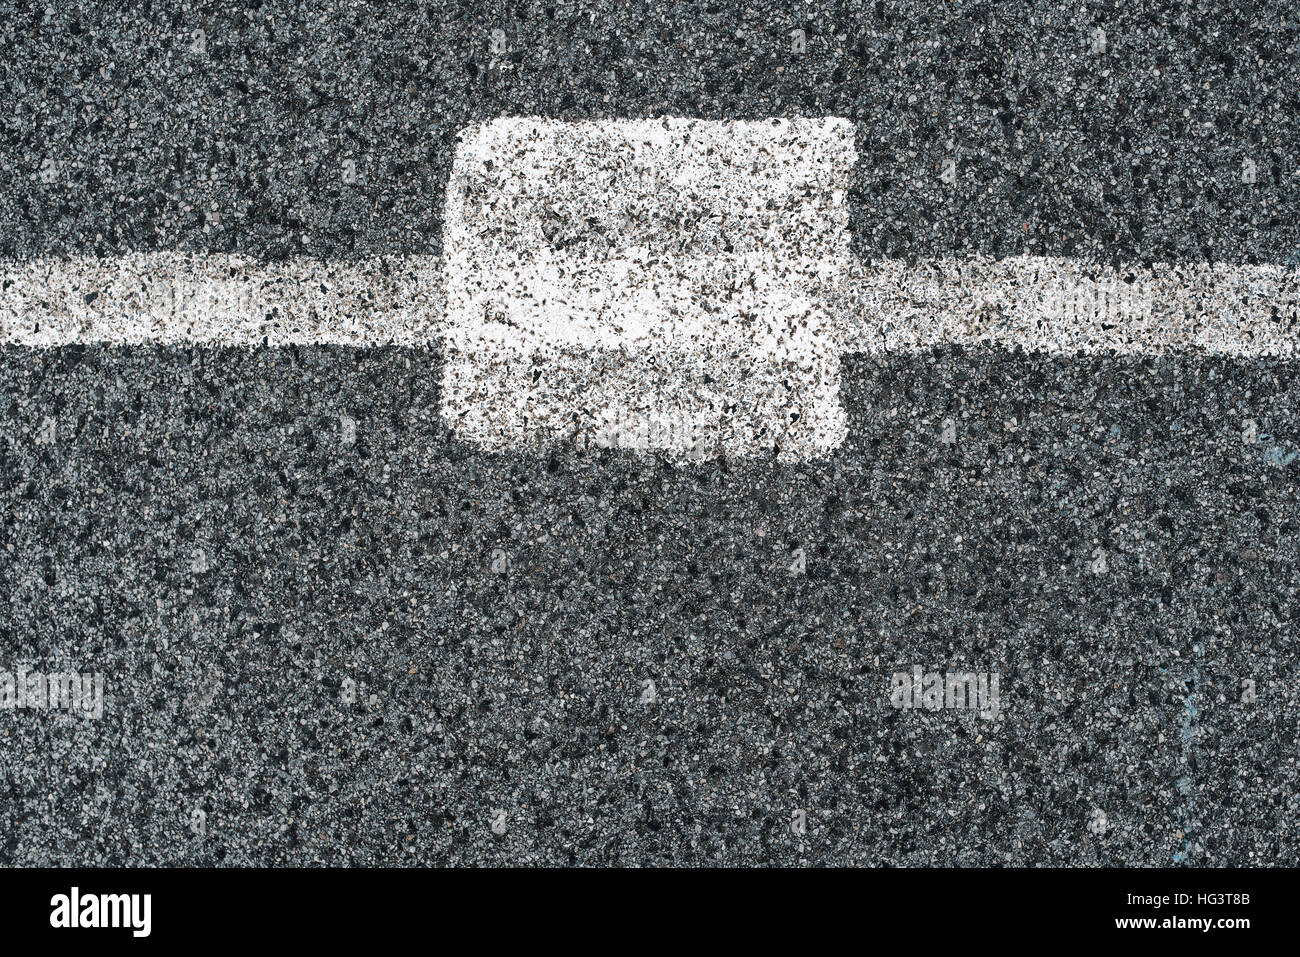 Ligne blanche et la route d'asphalte comme motif de fond simple, urbain surface texture à utiliser pour l'élément de design minimaliste Banque D'Images